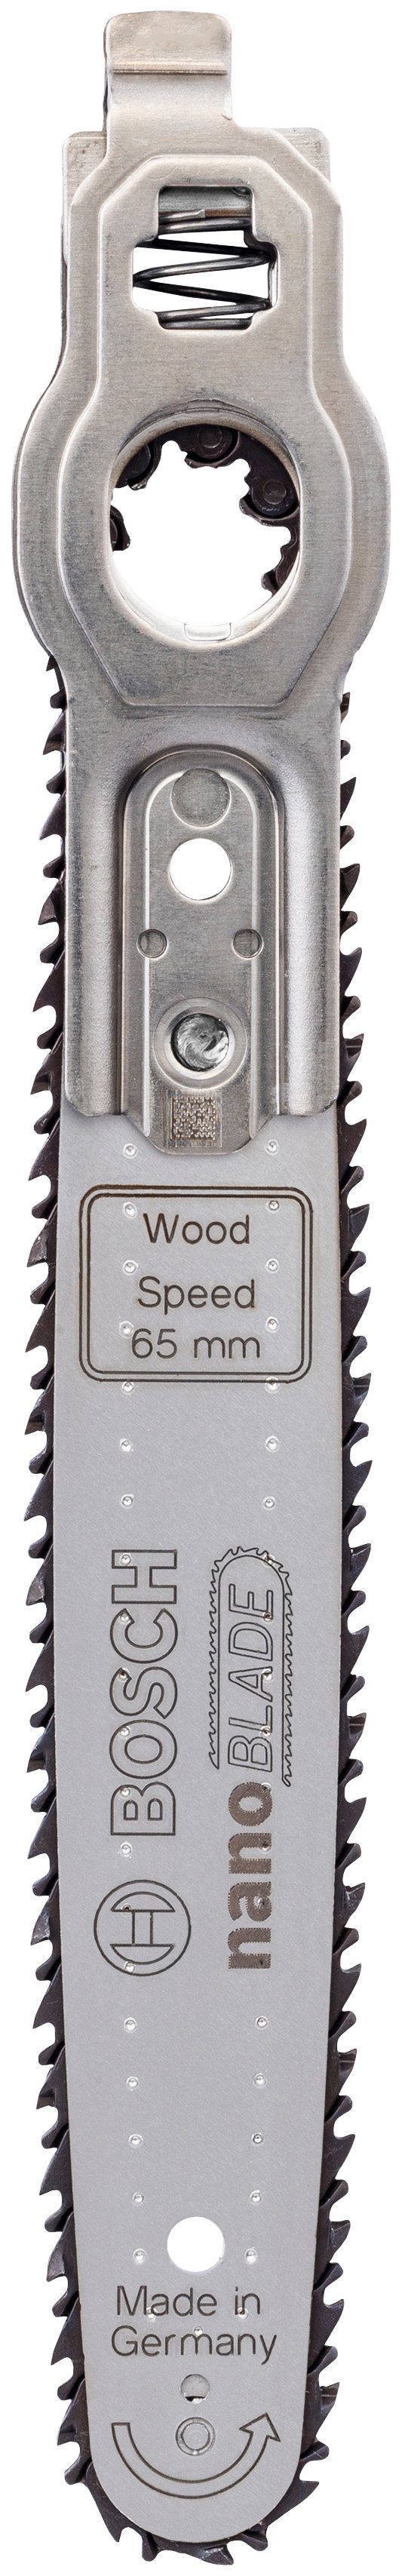 Speed nanoBLADE Wood 65 Home Speed Sägeblatt Bosch Garden Wood & 65, Mikro-Kettensägeblatt nanoBLADE